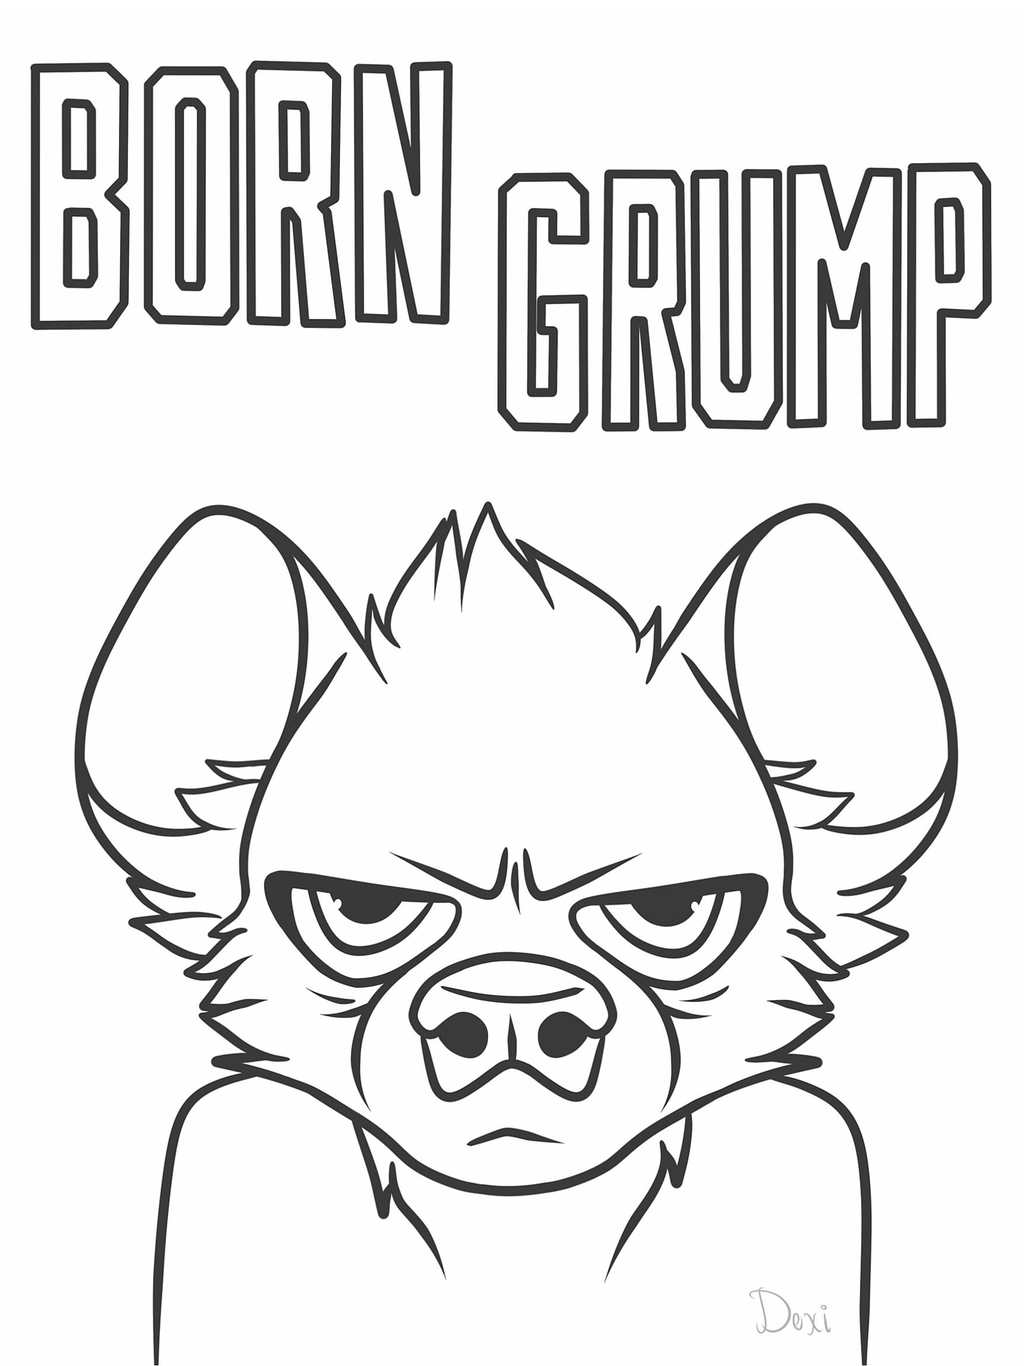 Born Grump!